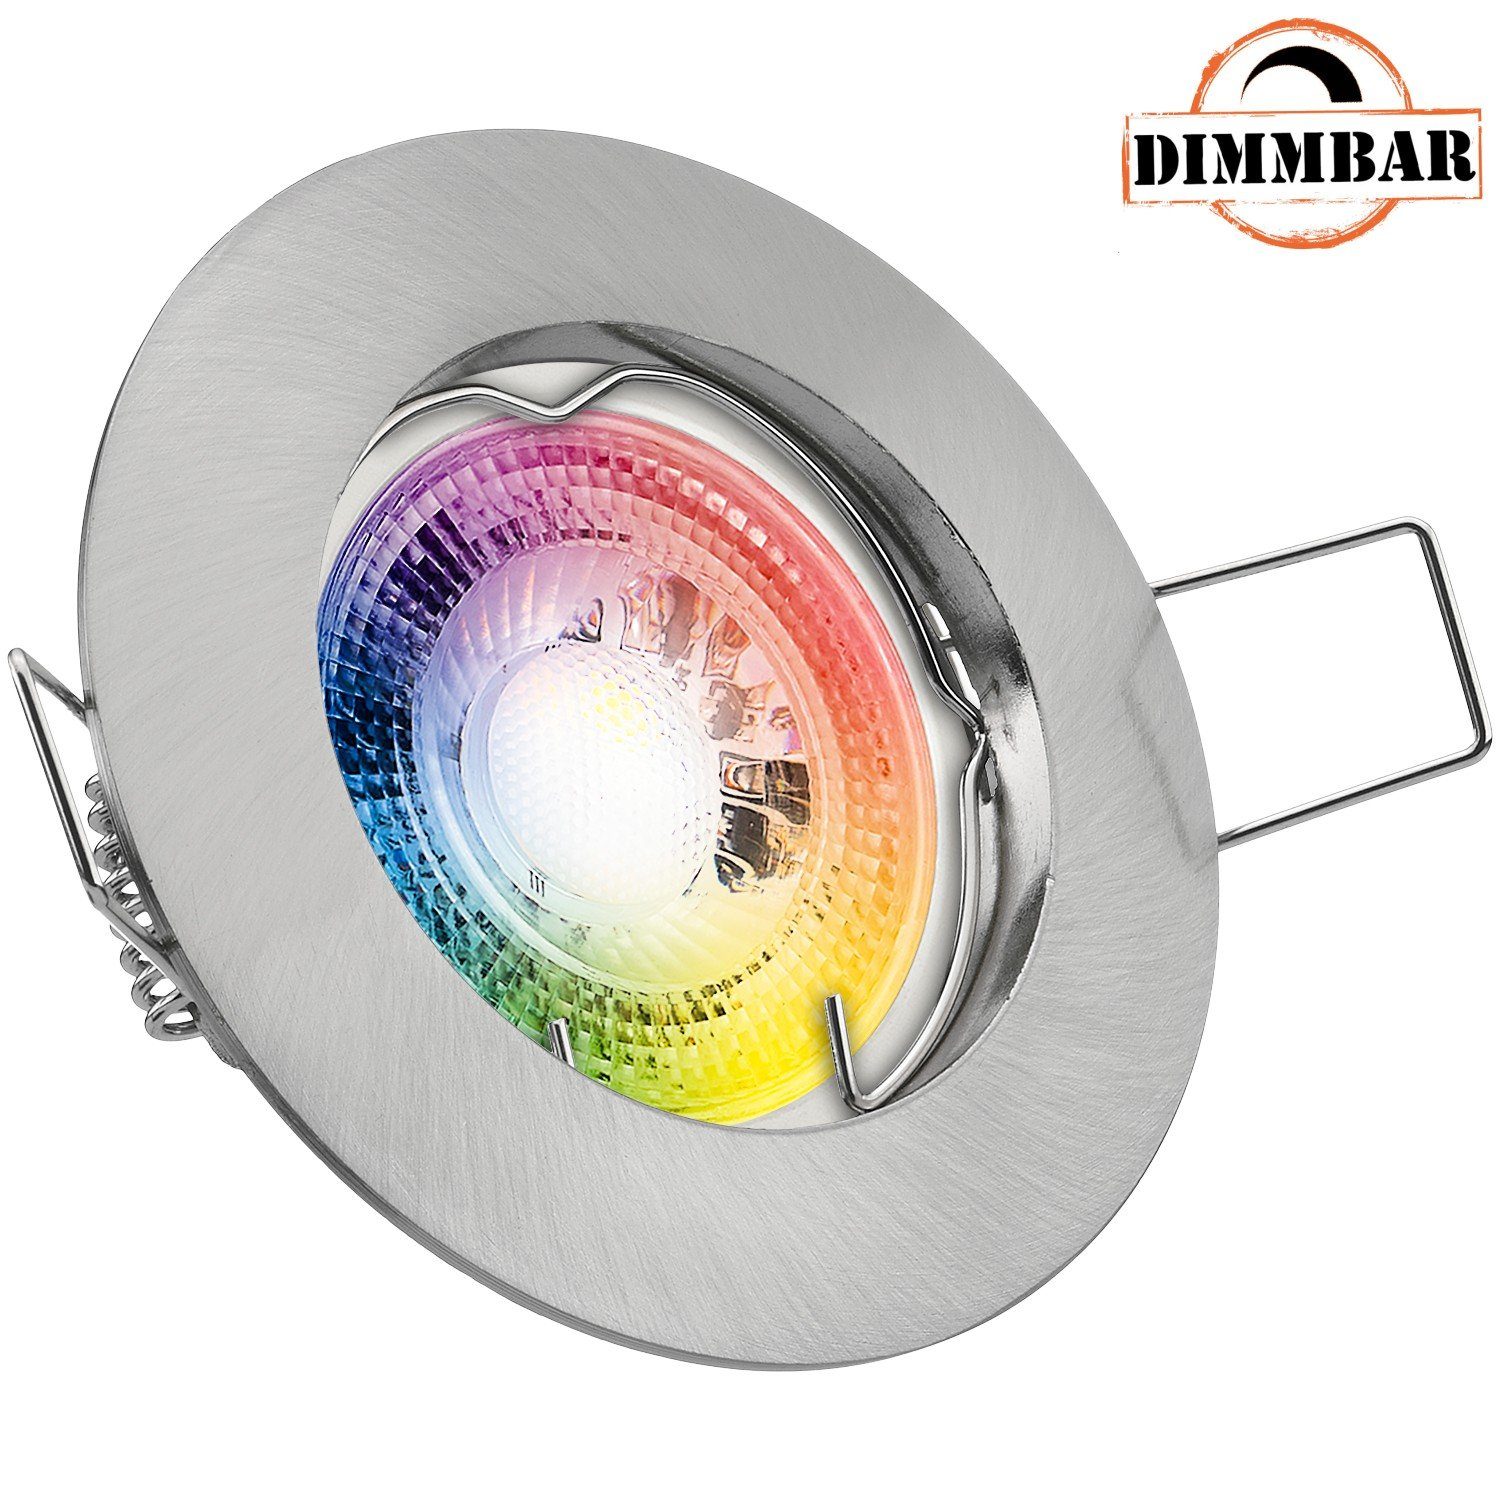 LEDANDO LED Einbaustrahler RGB LED Einbaustrahler Set GU10 in edelstahl / silber gebürstet mit 3W | Strahler